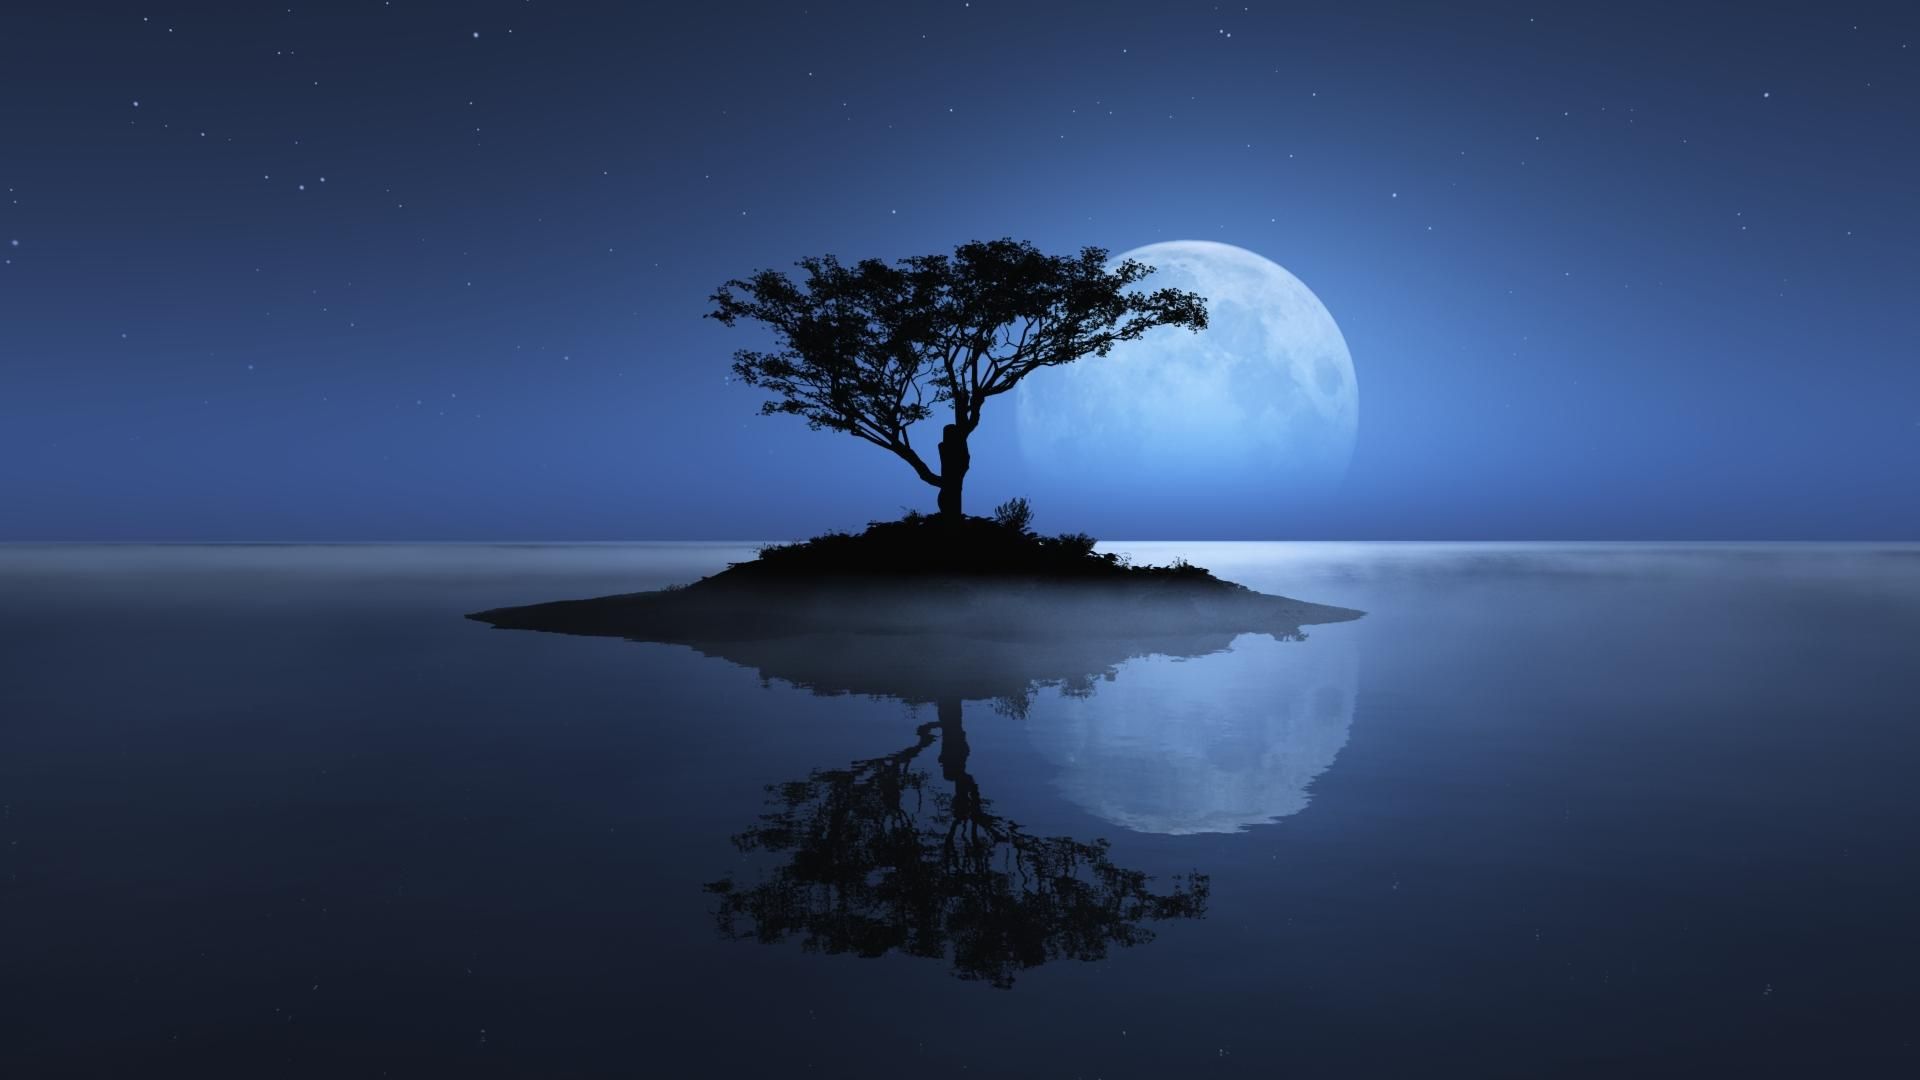 notte luna wallpaper hd,natura,paesaggio naturale,cielo,albero,risorse idriche